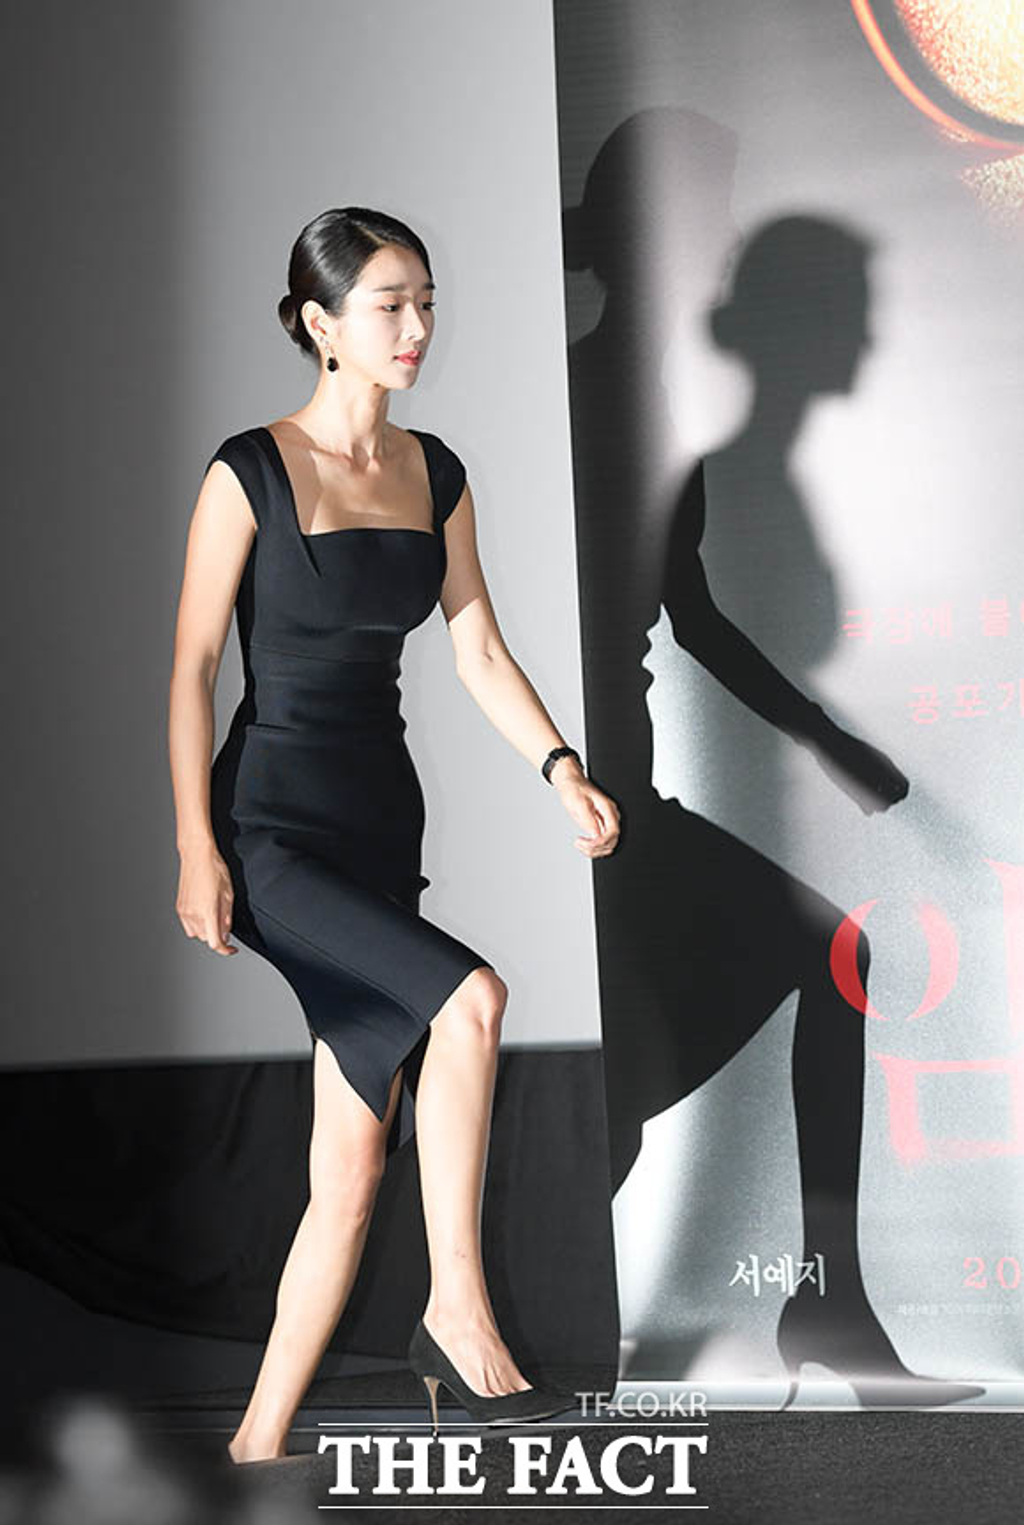 Ngay cả bộ đầm đen ôm sát nhìn hơi già so với tuổi, Seo Ye Ji vẫn cân được hết. Bộ đầm ôm sát tôn body chuẩn chỉnh của cô, ngay cả đến chiếc bóng in lên tường cũng vô cùng gợi cảm kiêu sa chứ chưa nói đến 